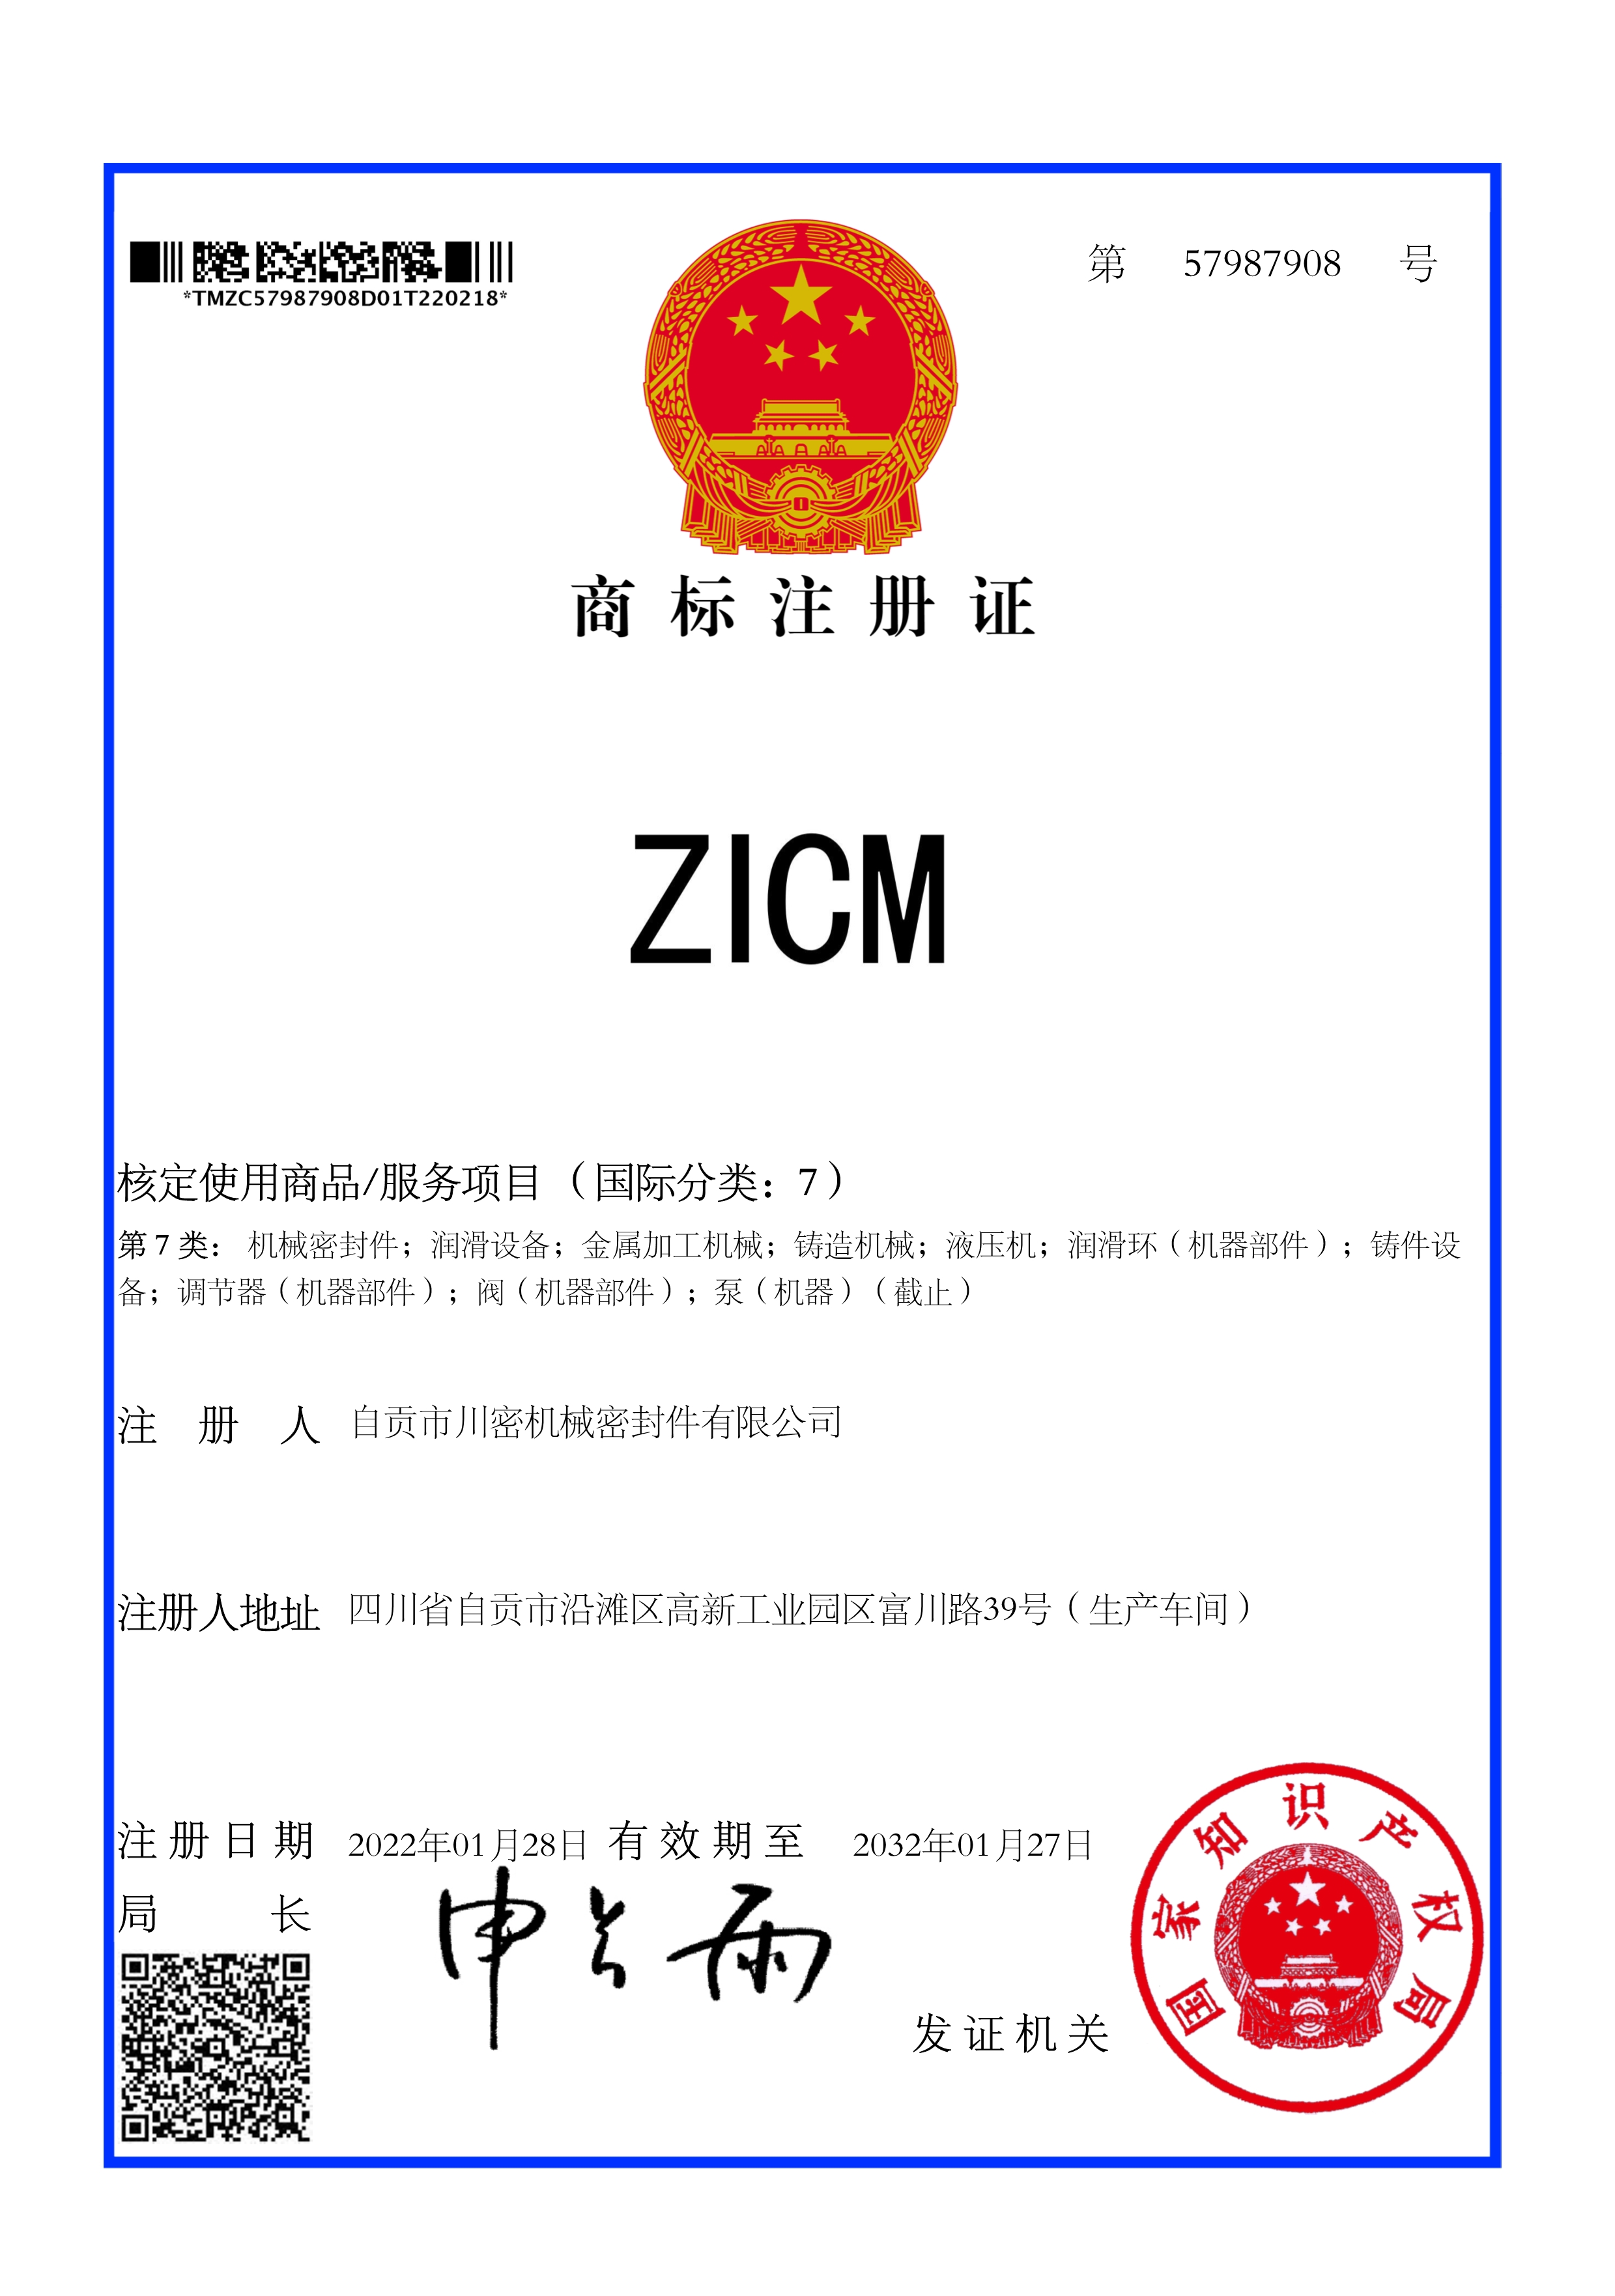 热烈祝贺公司《ZICM》商标成功取得